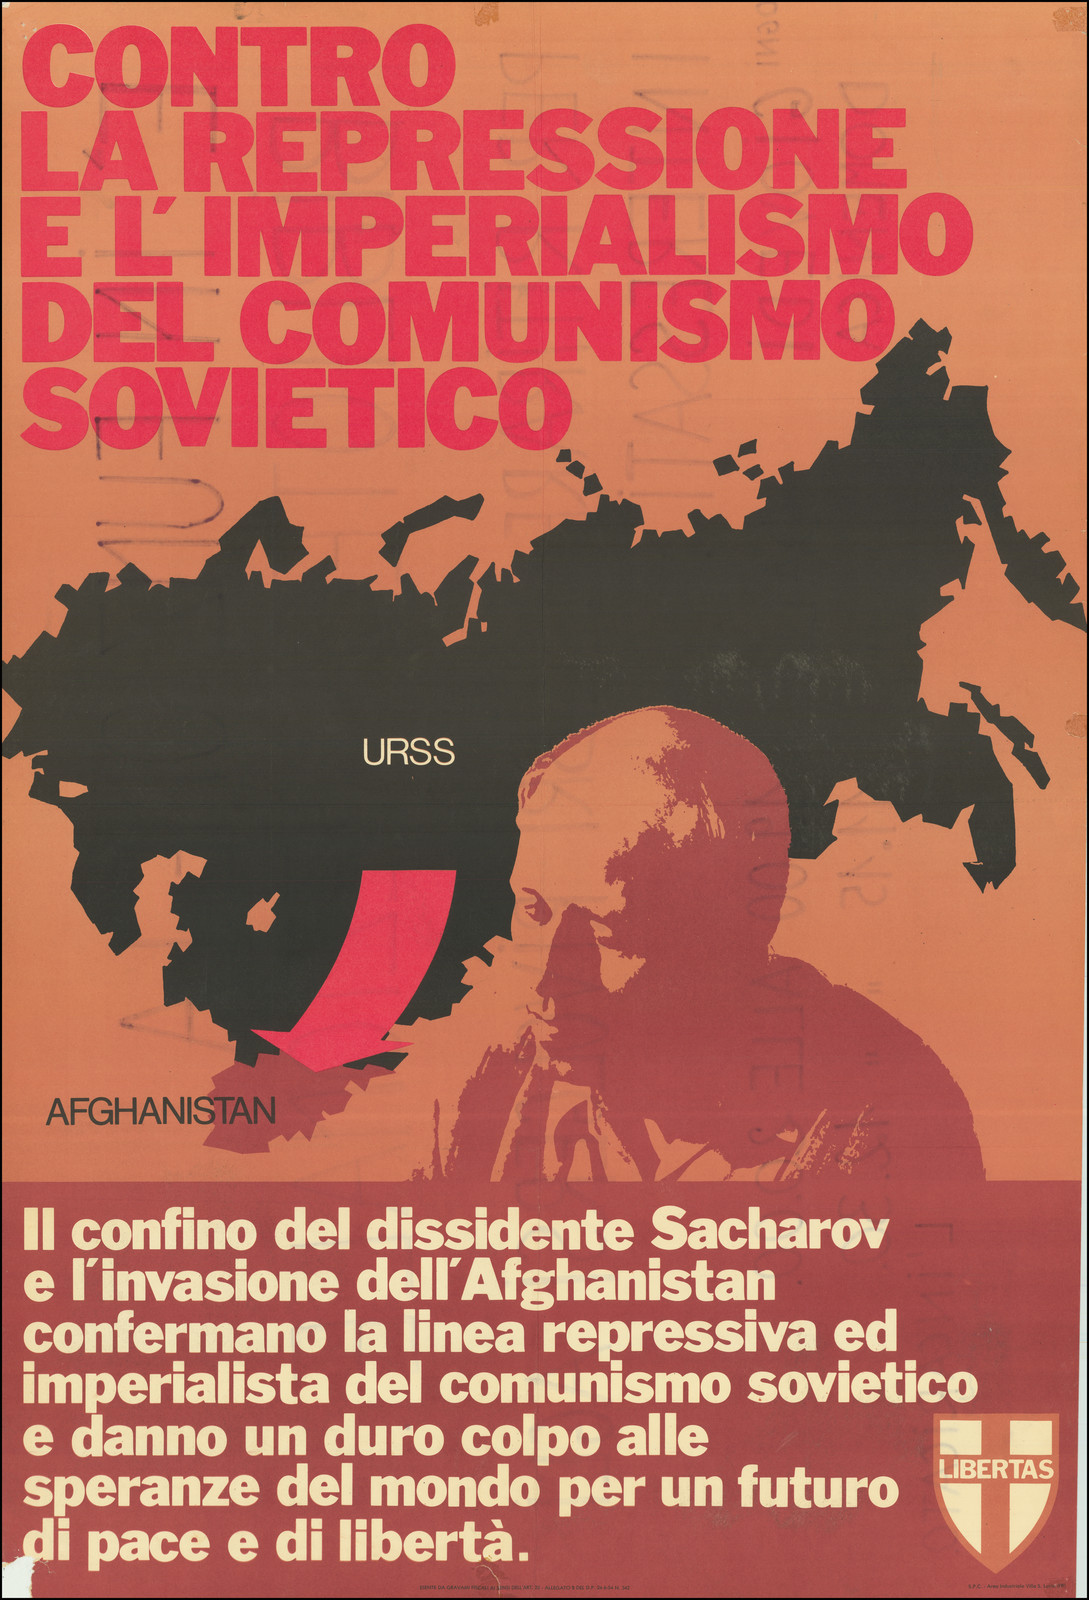 (Against the Repression and Imperialism of Soviet Communism) Contro La Repressione e L'Imperialismo del Comunismo Sovietico